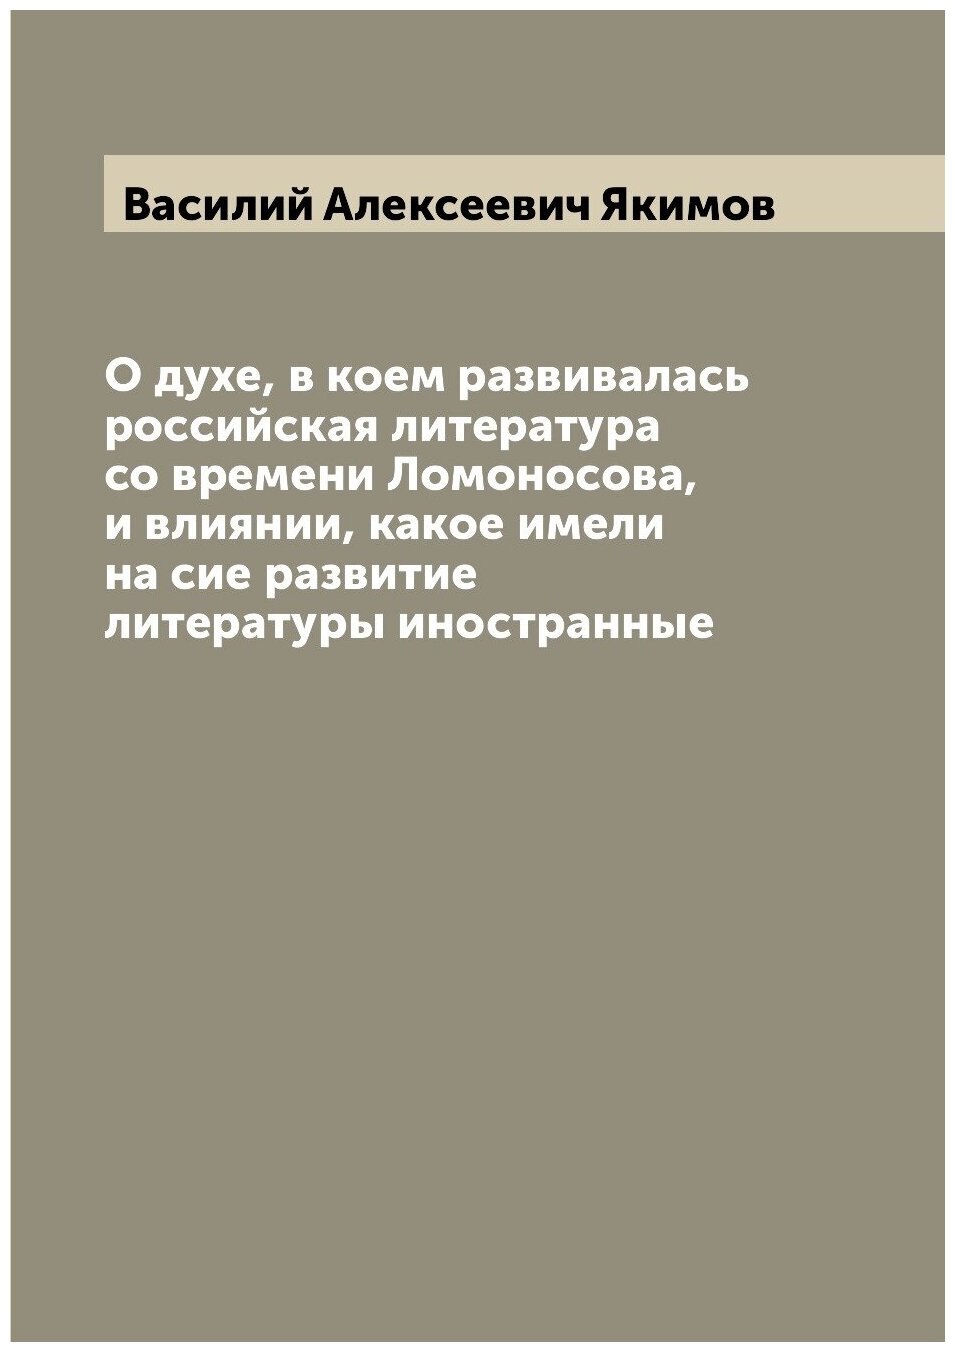 О духе, в коем развивалась российская литература со времени Ломоносова, и влиянии, какое имели на сие развитие литературы иностранные